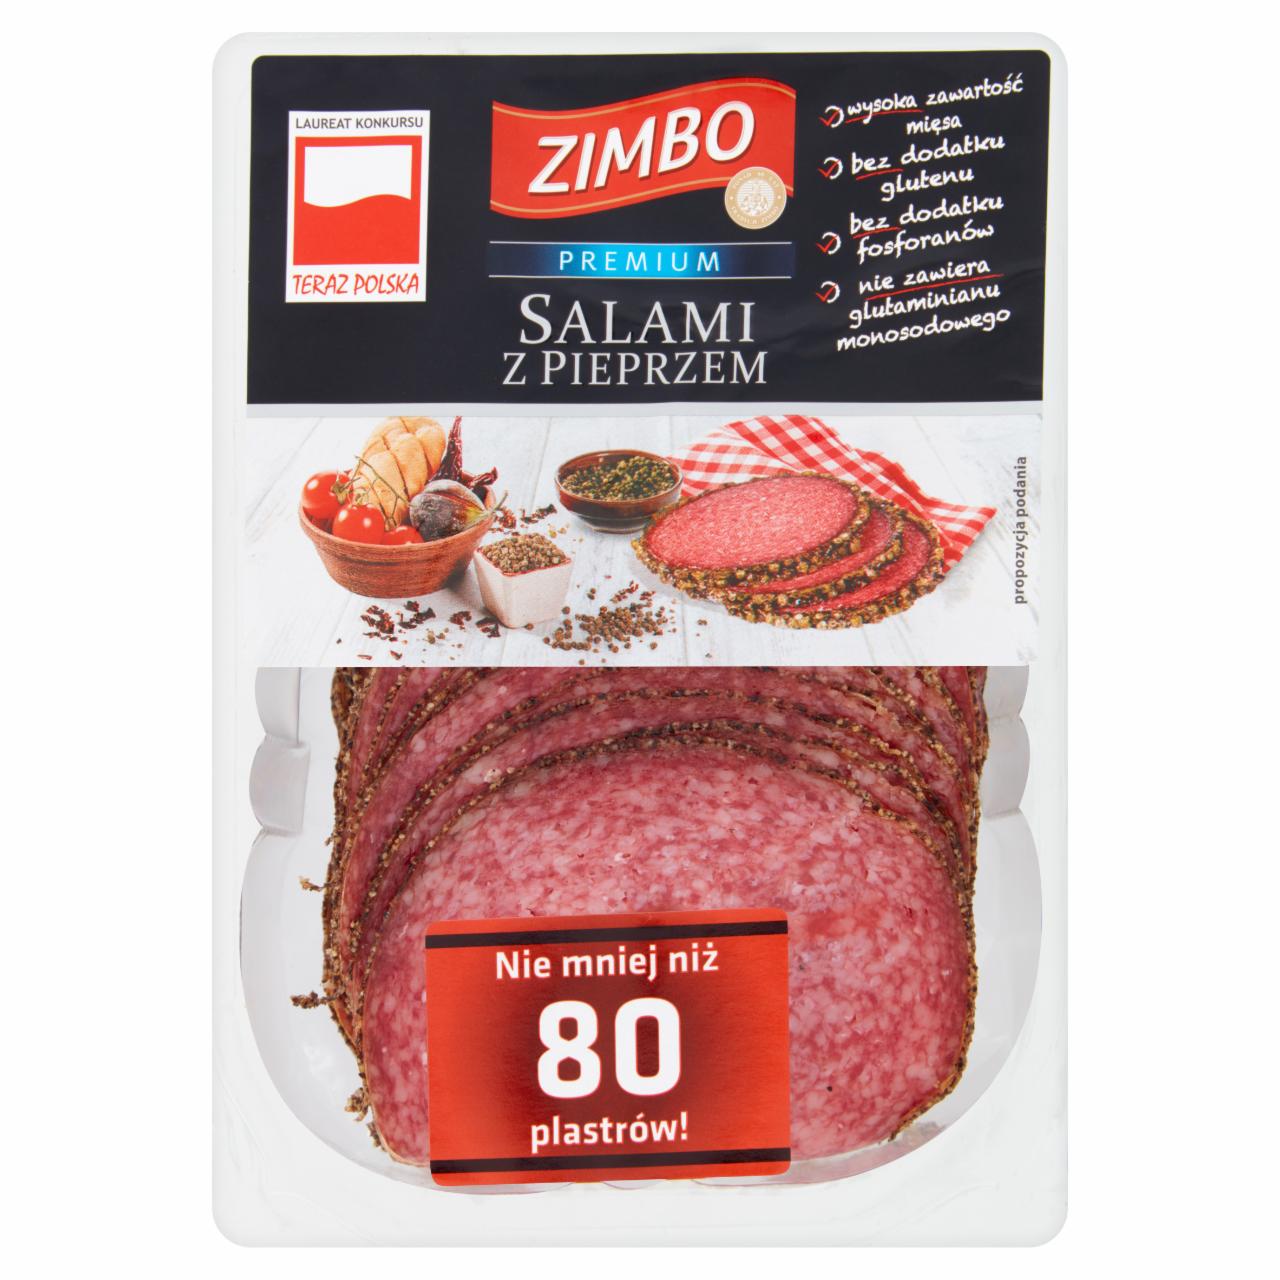 Zdjęcia - Zimbo Premium Salami z pieprzem 500 g